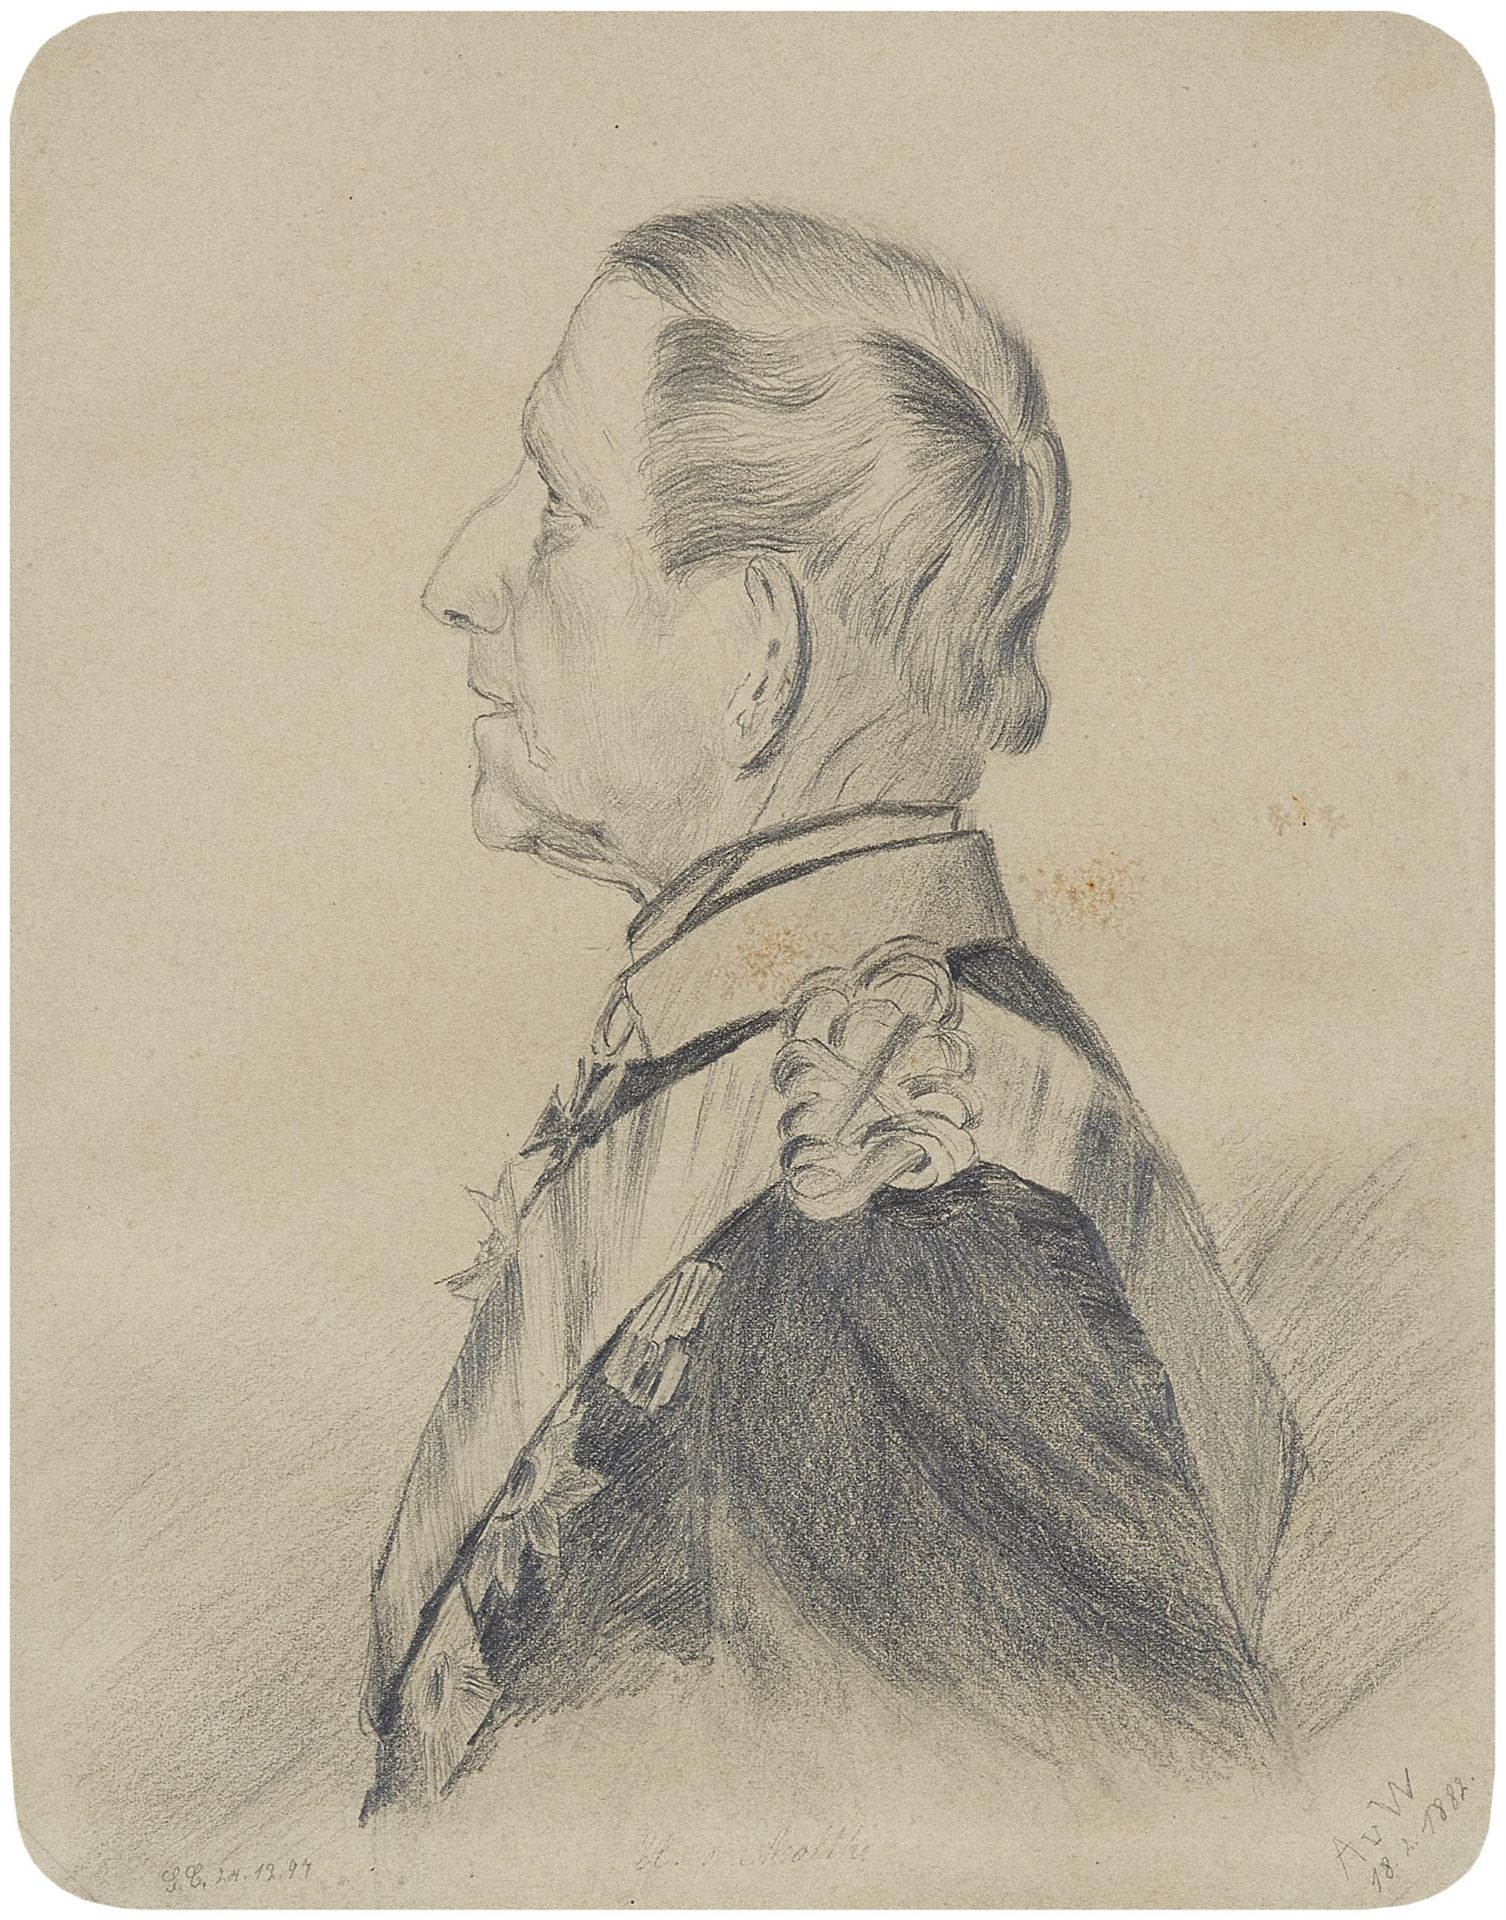 Anton von Werner, Bildnis des Generals Helmuth von Moltke im Profil